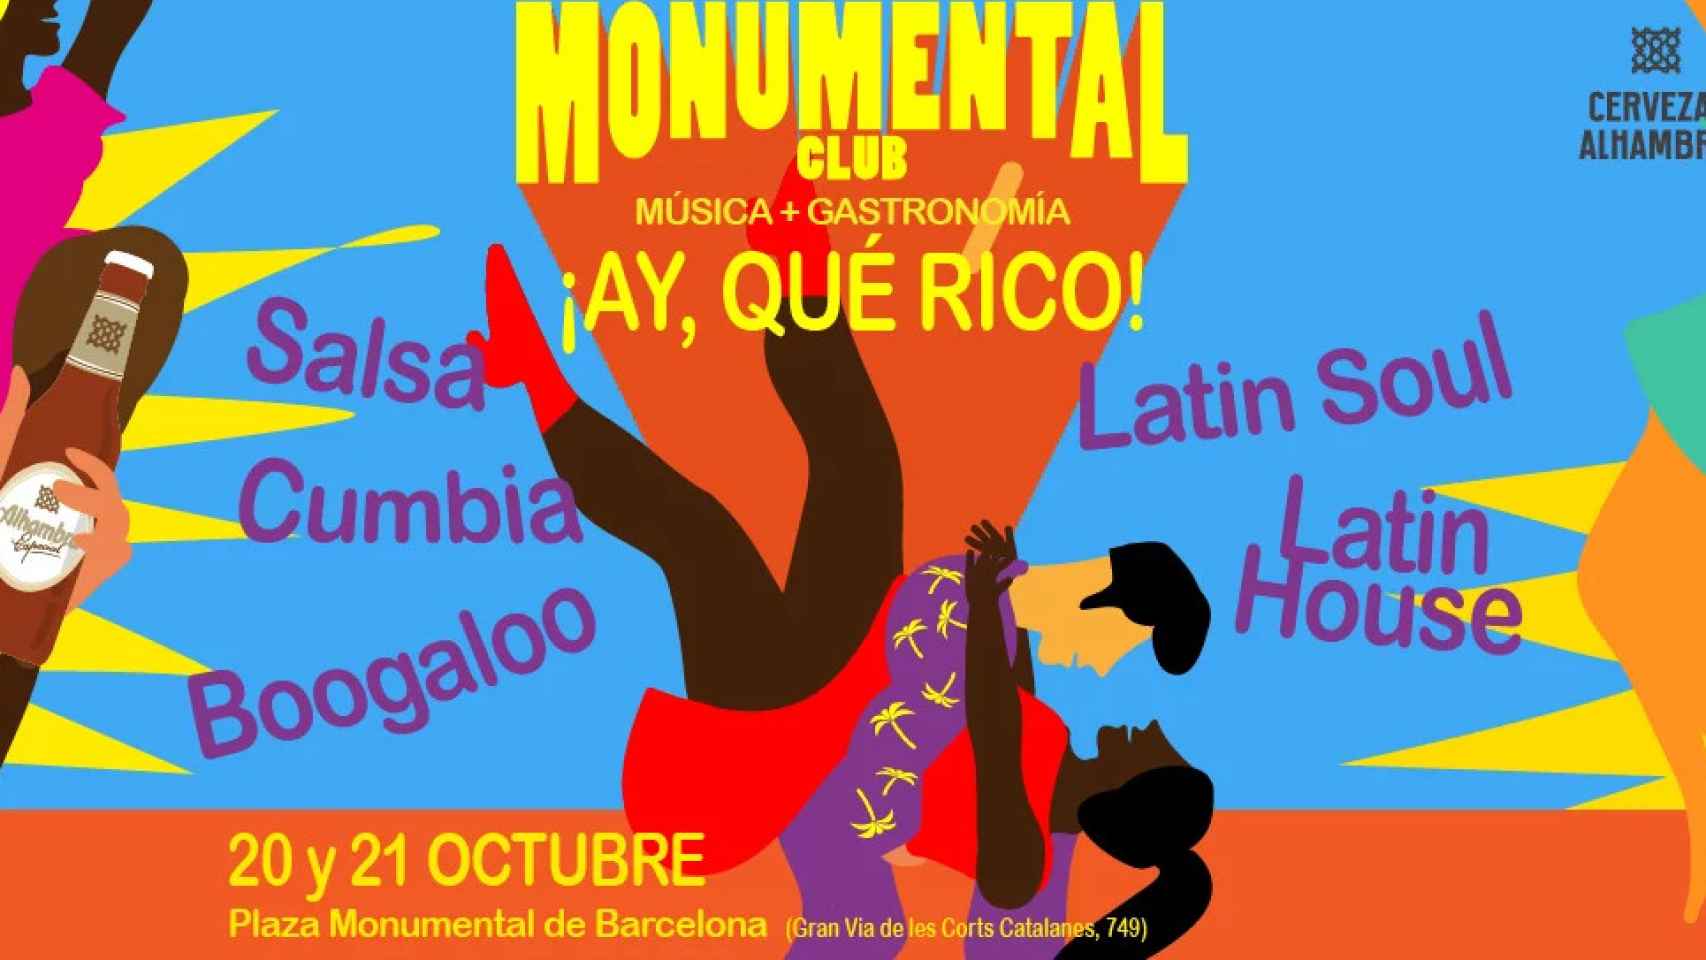 Cartel publicitario del evento de este fin de semana en el Monumental Club